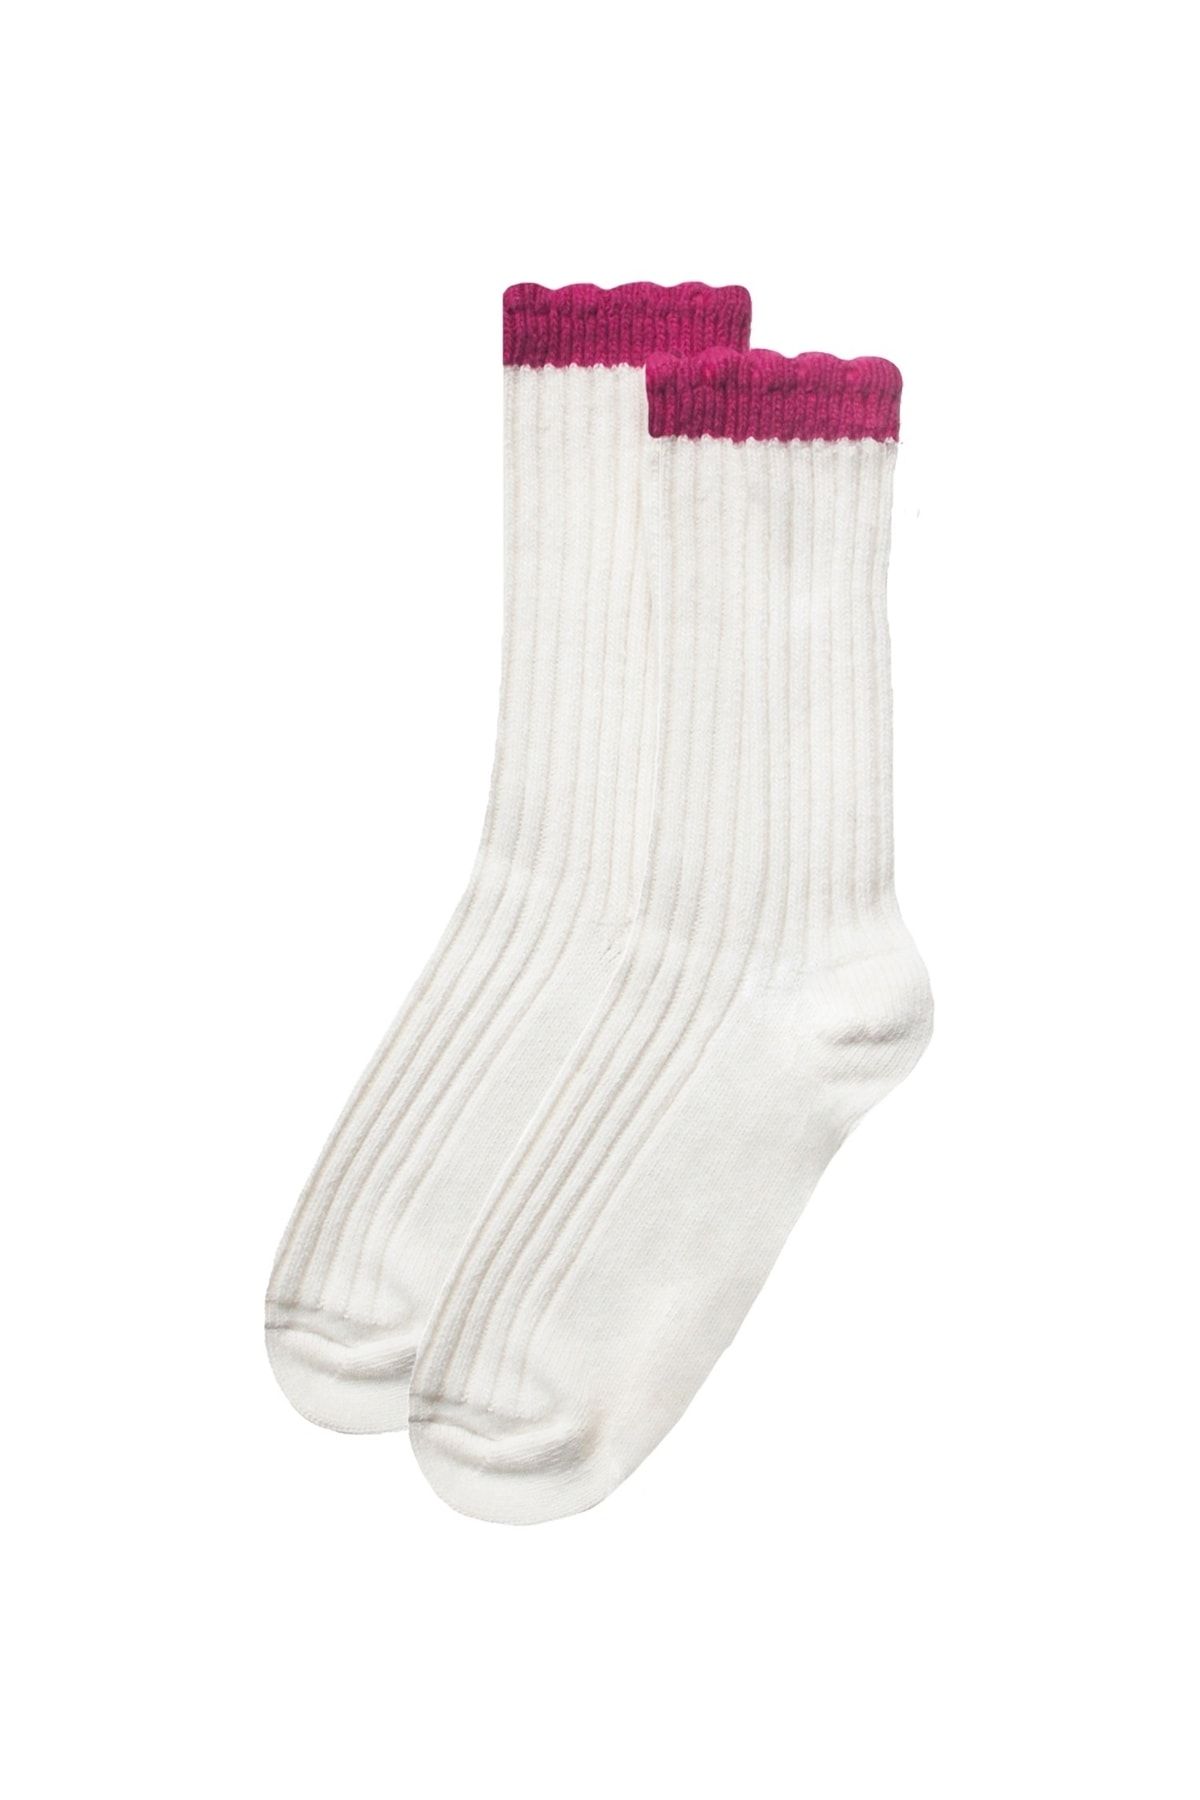 UNLIMITED LEGWEAR Kalın Kışlık Yün Ve Kaşmir Karışımlı Fuşya/krem Bileği Dilimli Kadın Çorap